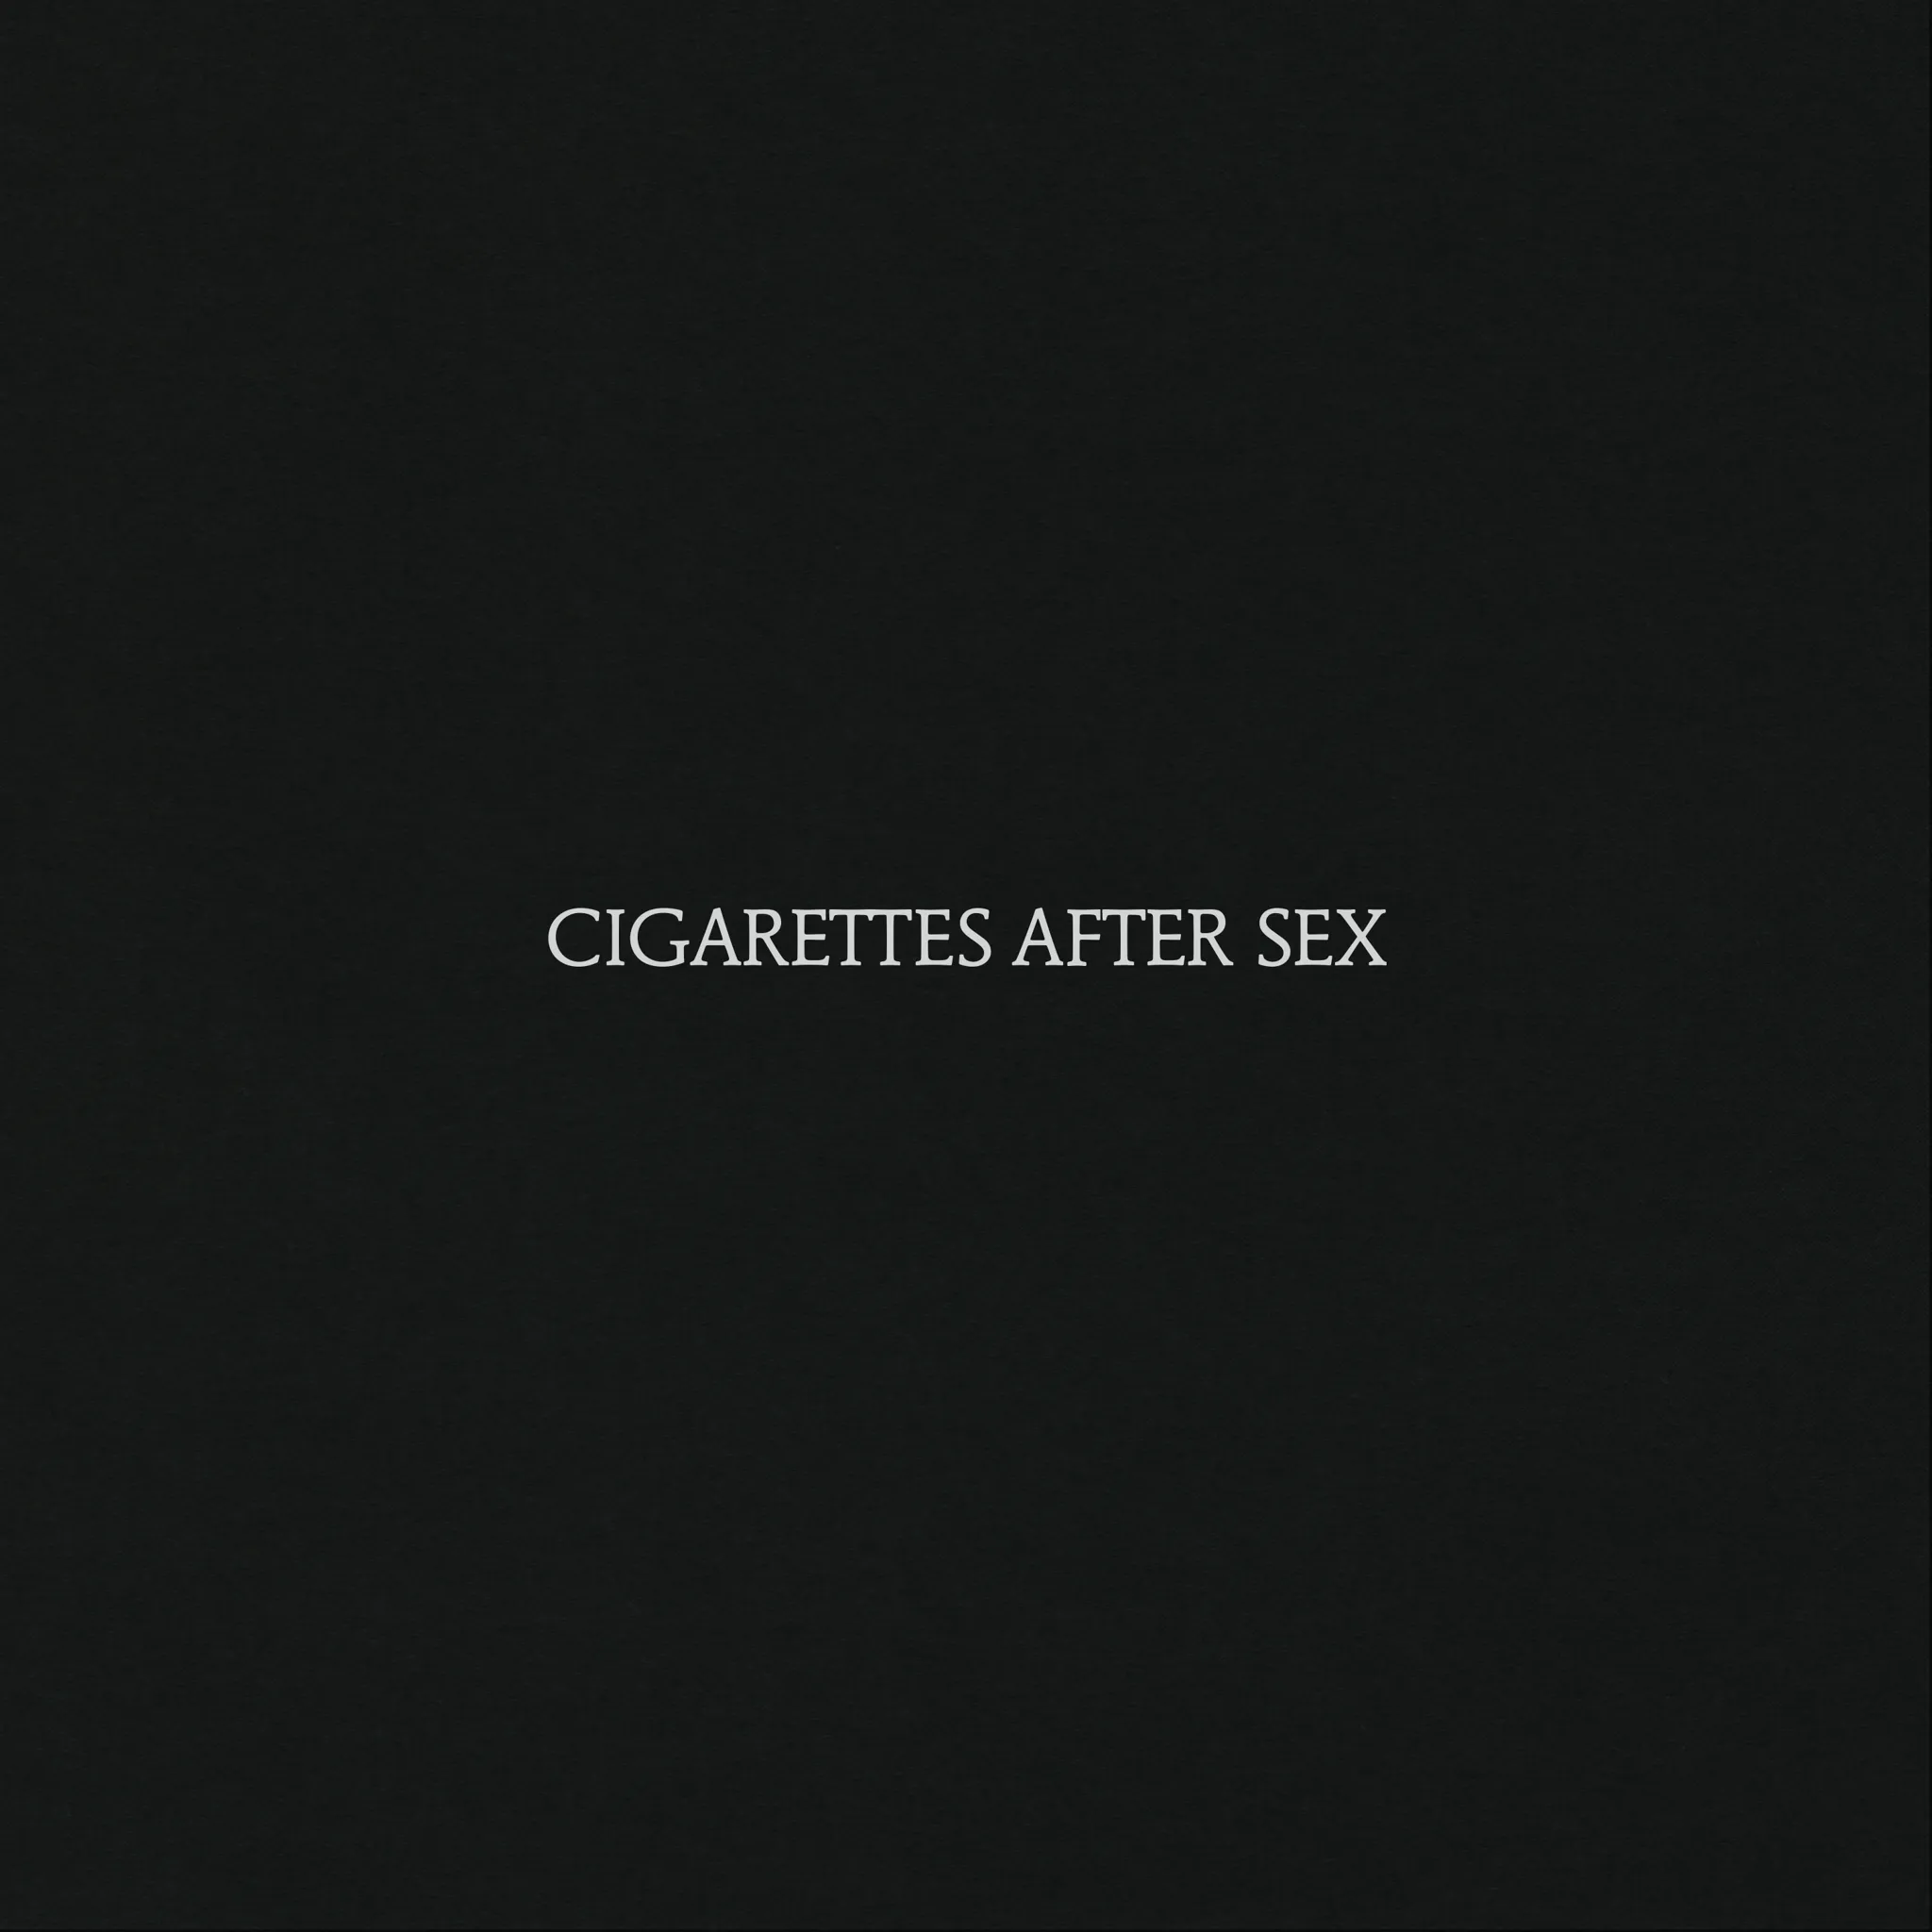 Cigarettes After Sex - Cigarettes After Sex artwork